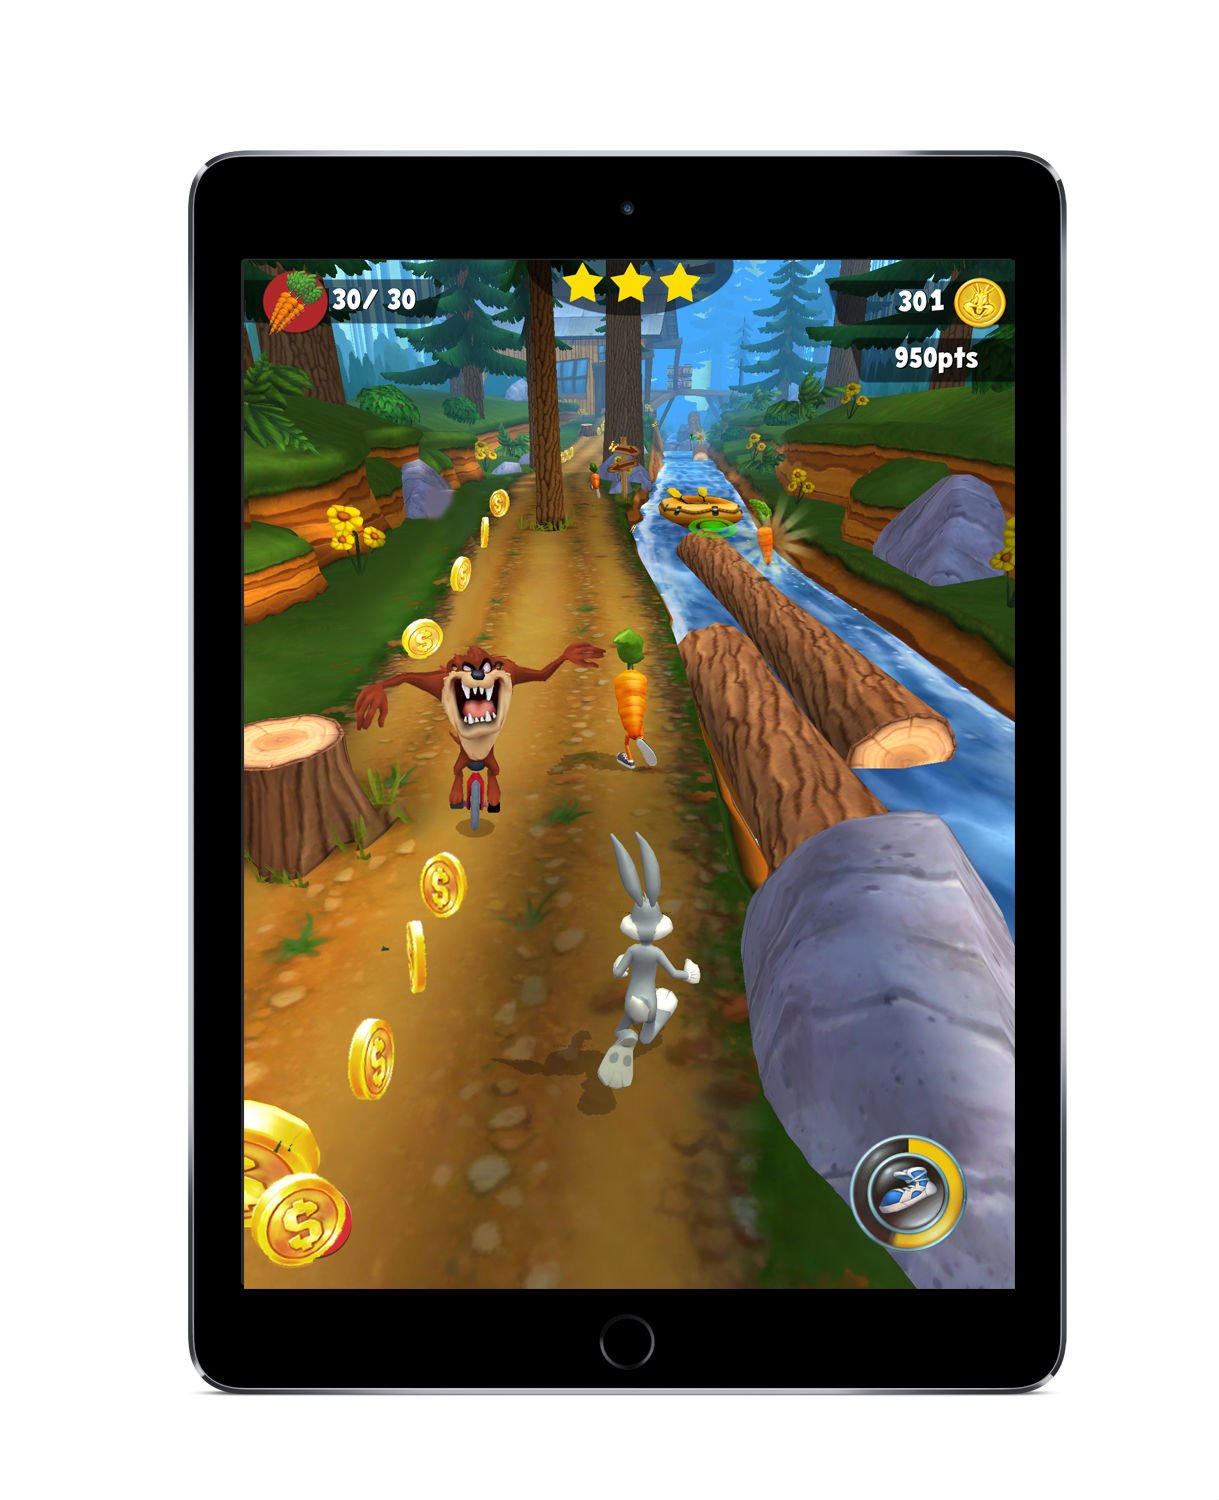 Game Play Bugs Bunny - Looney Tunes Dash! (iPad)